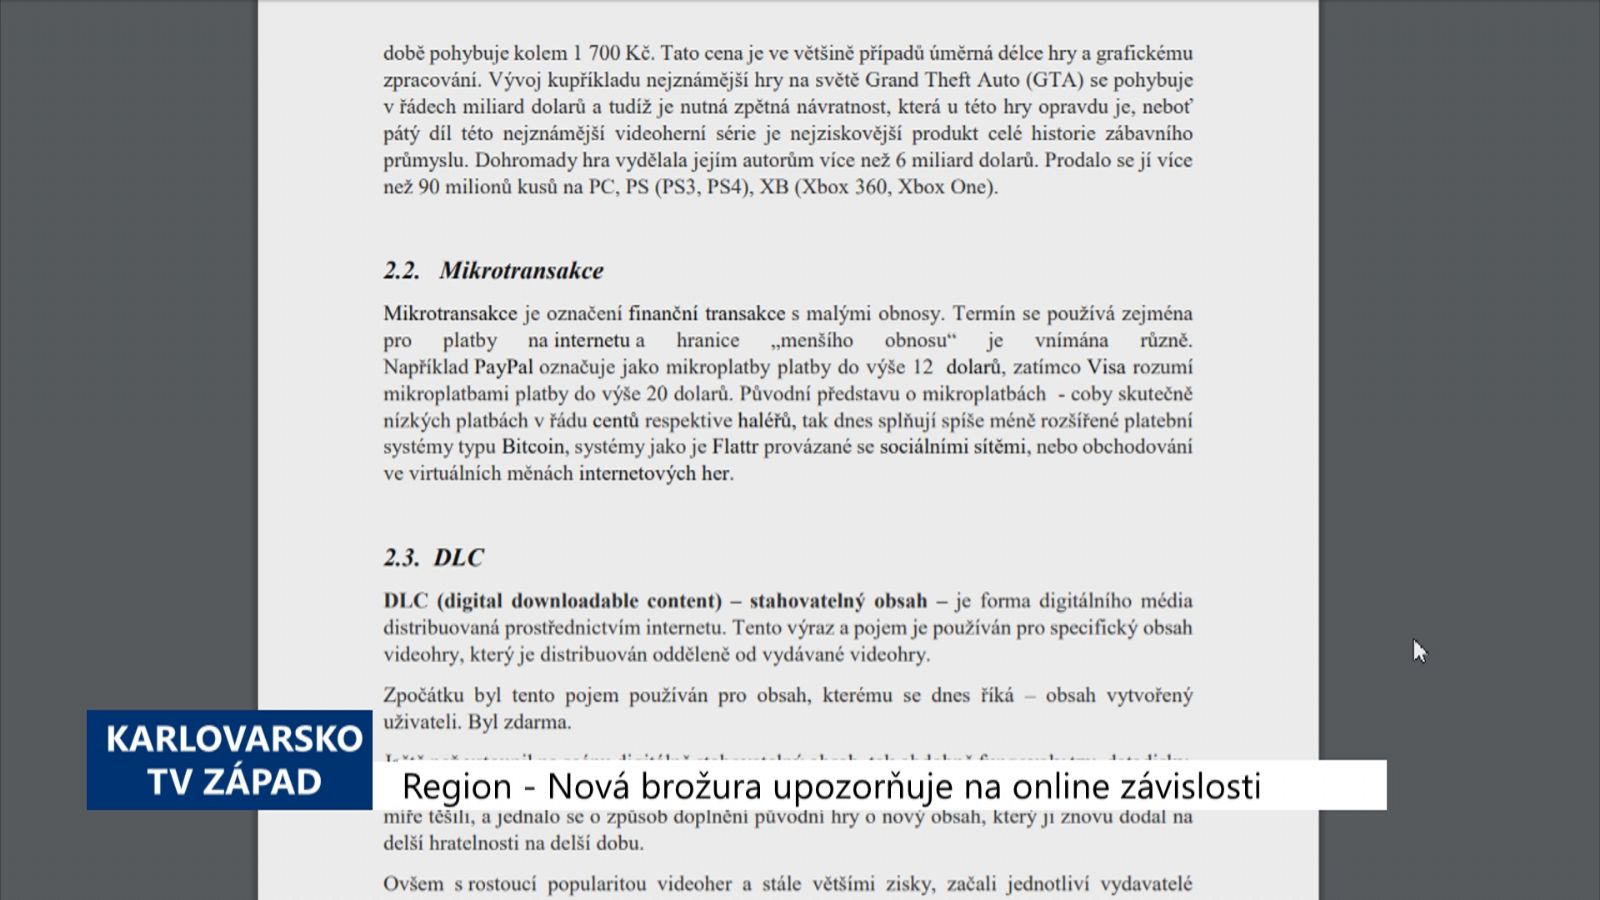 Region: Nová brožura upozorňuje na online závislosti (TV Západ)